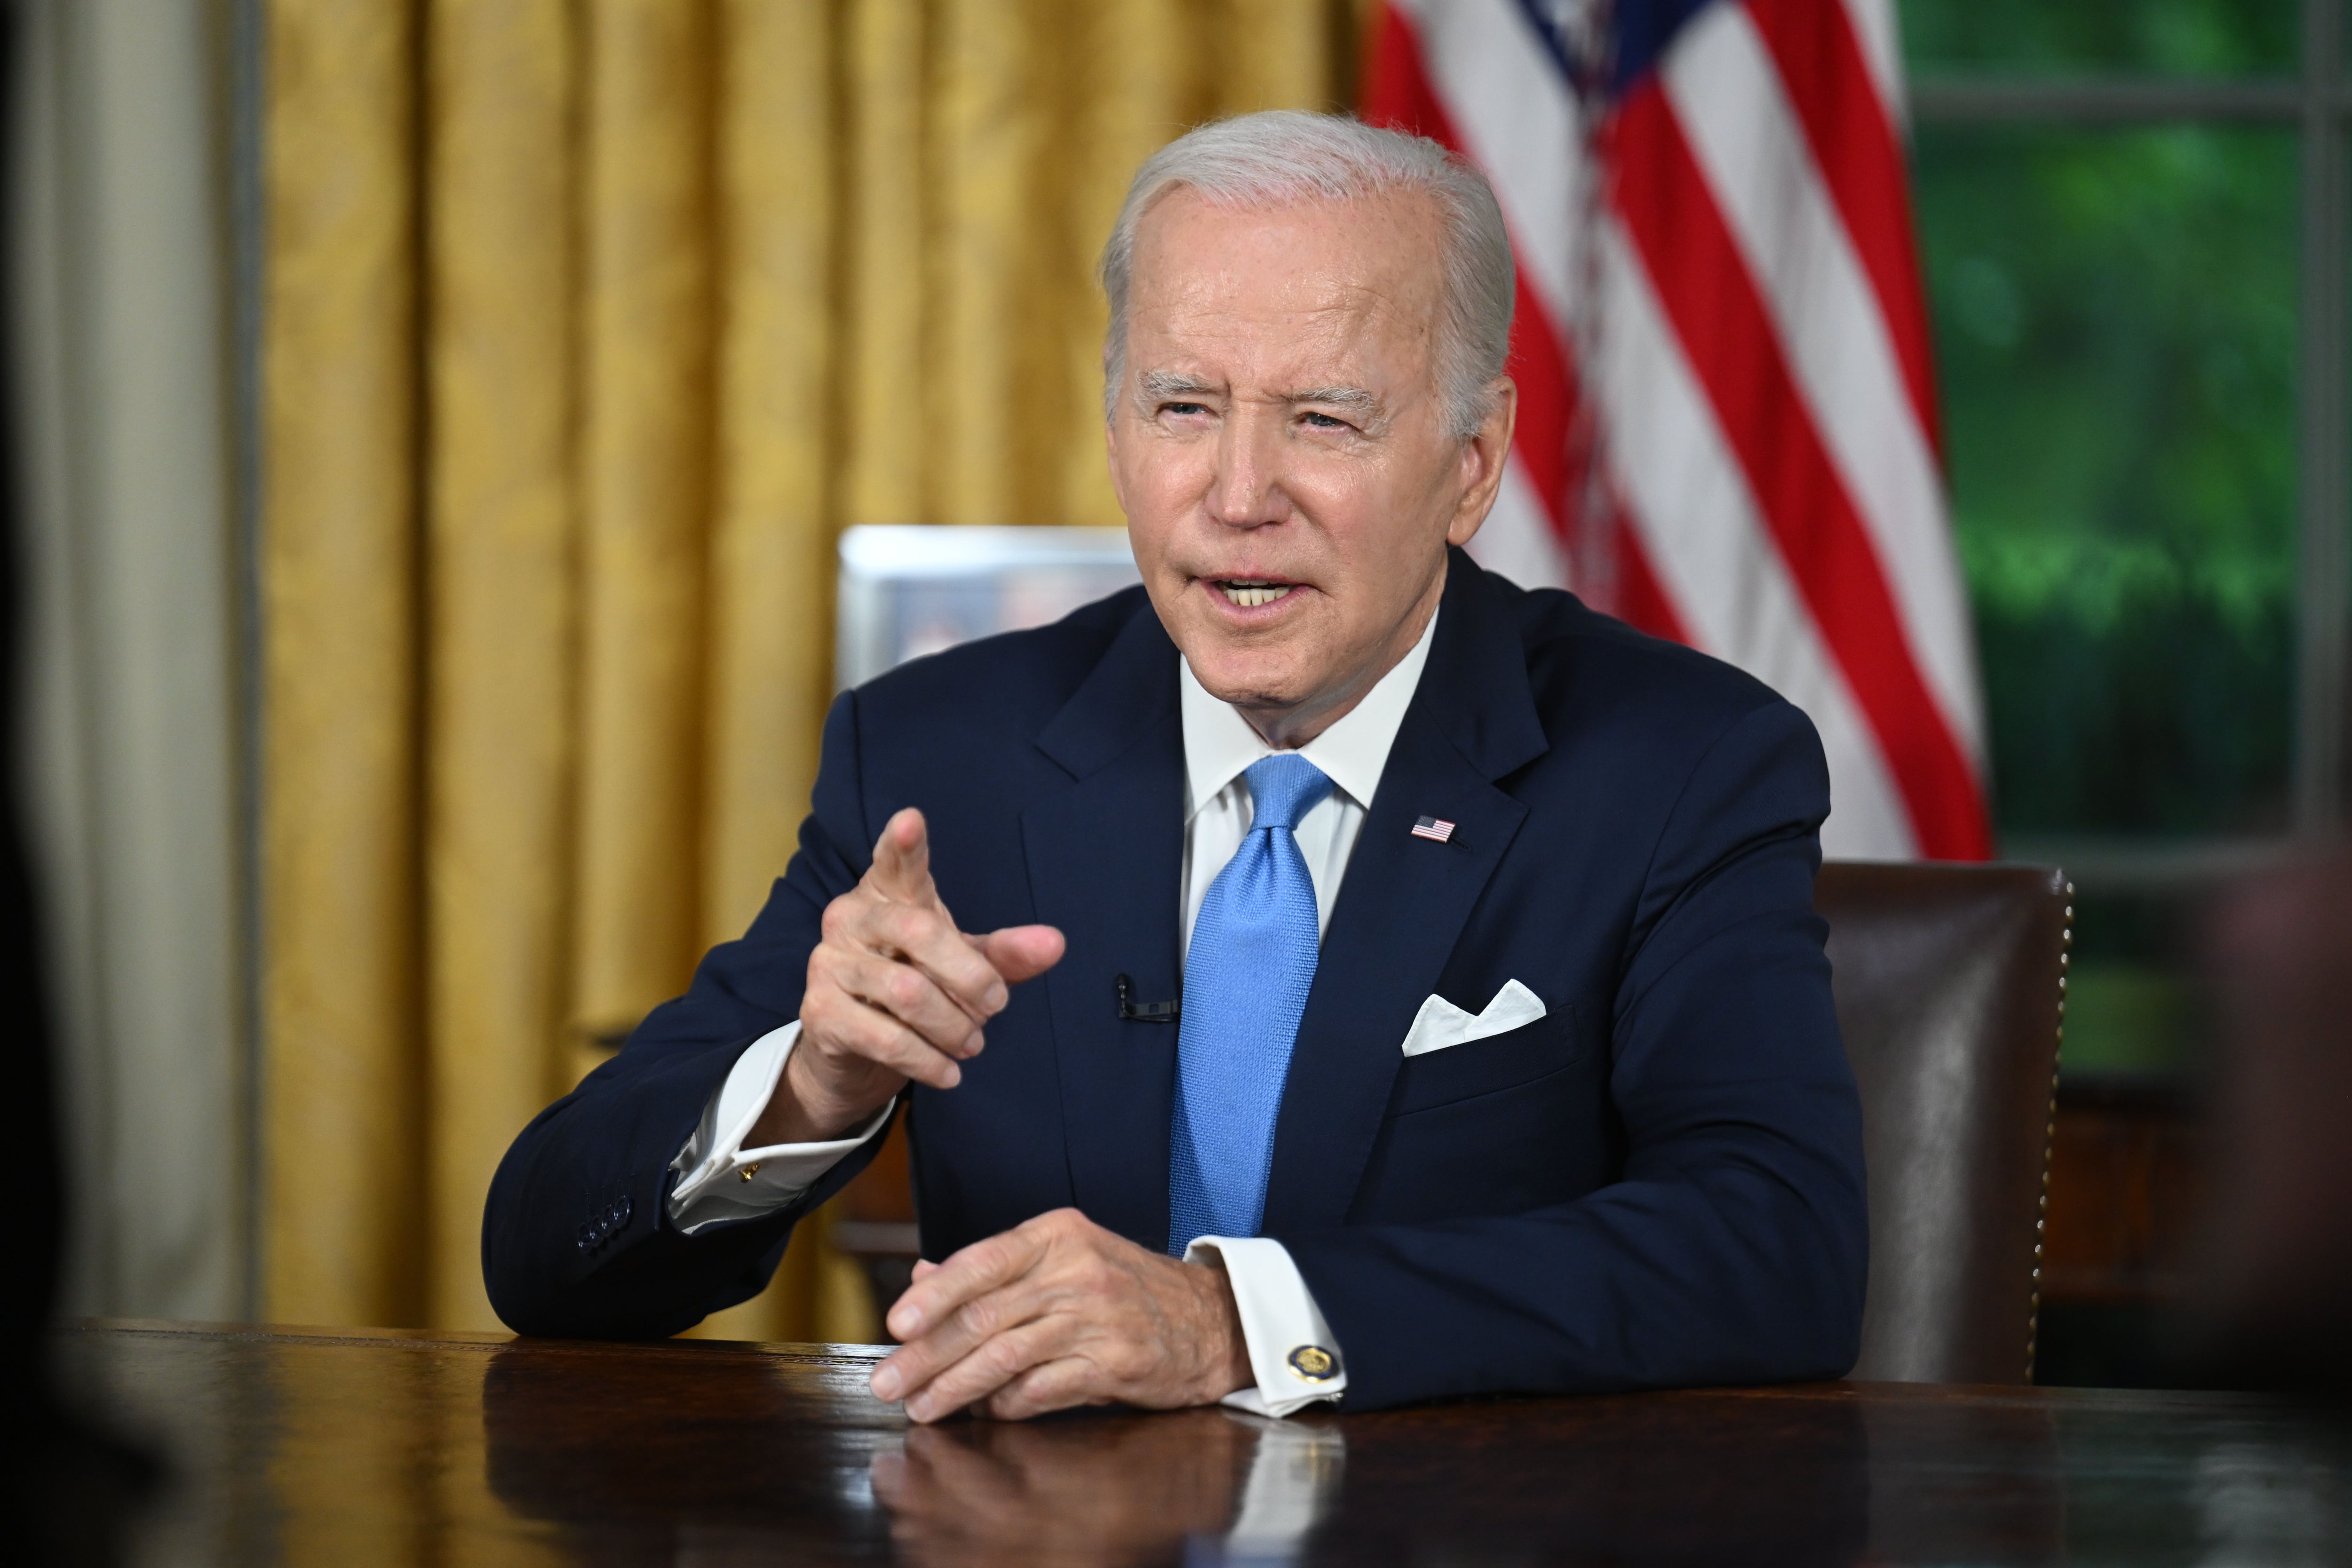 El presidente de Estados Unidos Joe Biden viajará a Israel el miércoles - Infobae